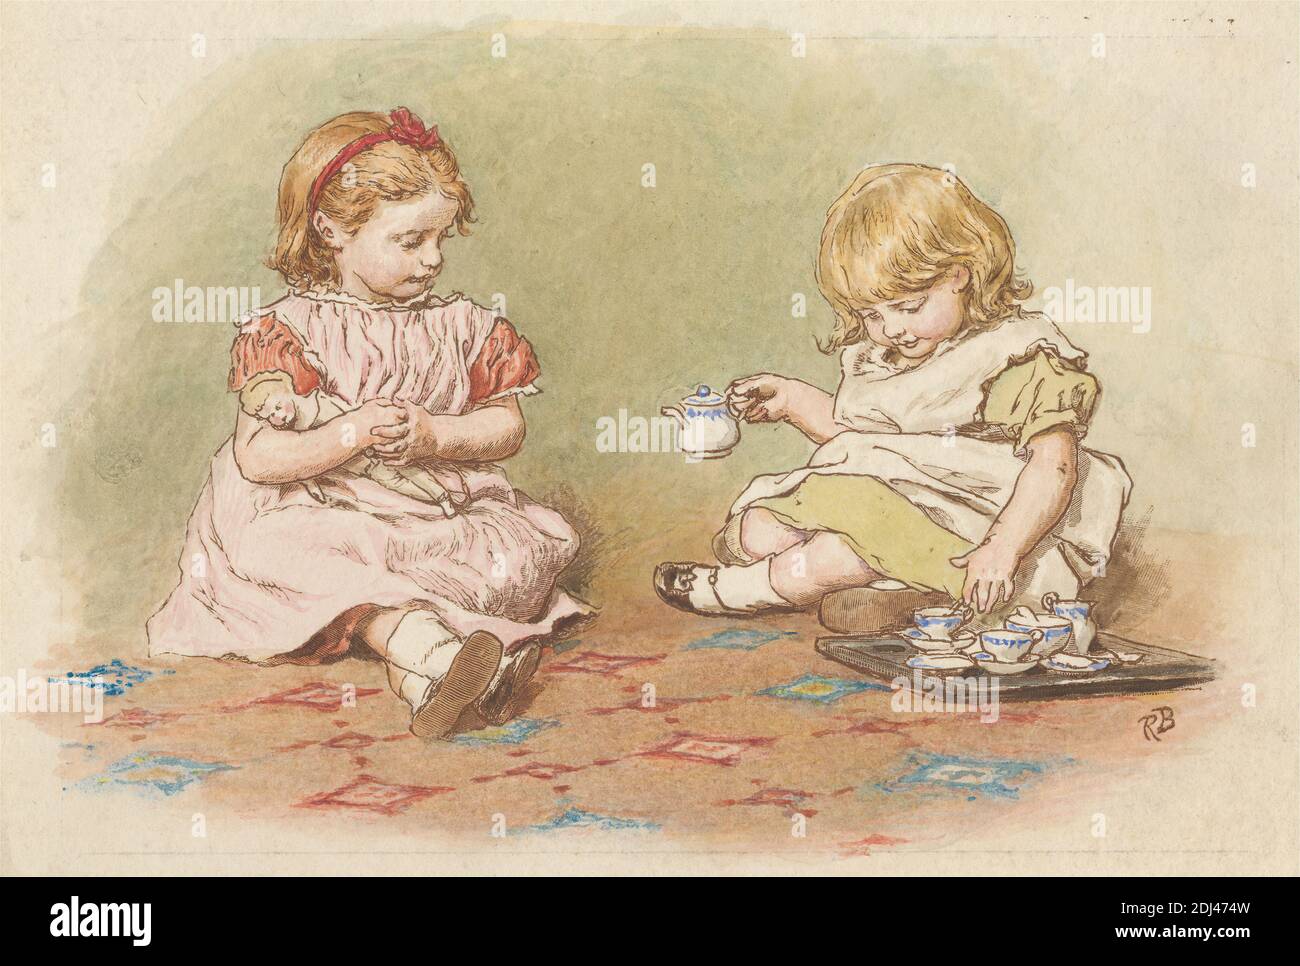 Two Girls Playing, Stampa fatta da Robert Barnes, 1840–1895, inglese, dopo  Robert Barnes, 1840–1895, inglese, non satinato, incisione in legno con  acquerello su carta di wove crema di spessore moderato, leggermente  testurizzata,